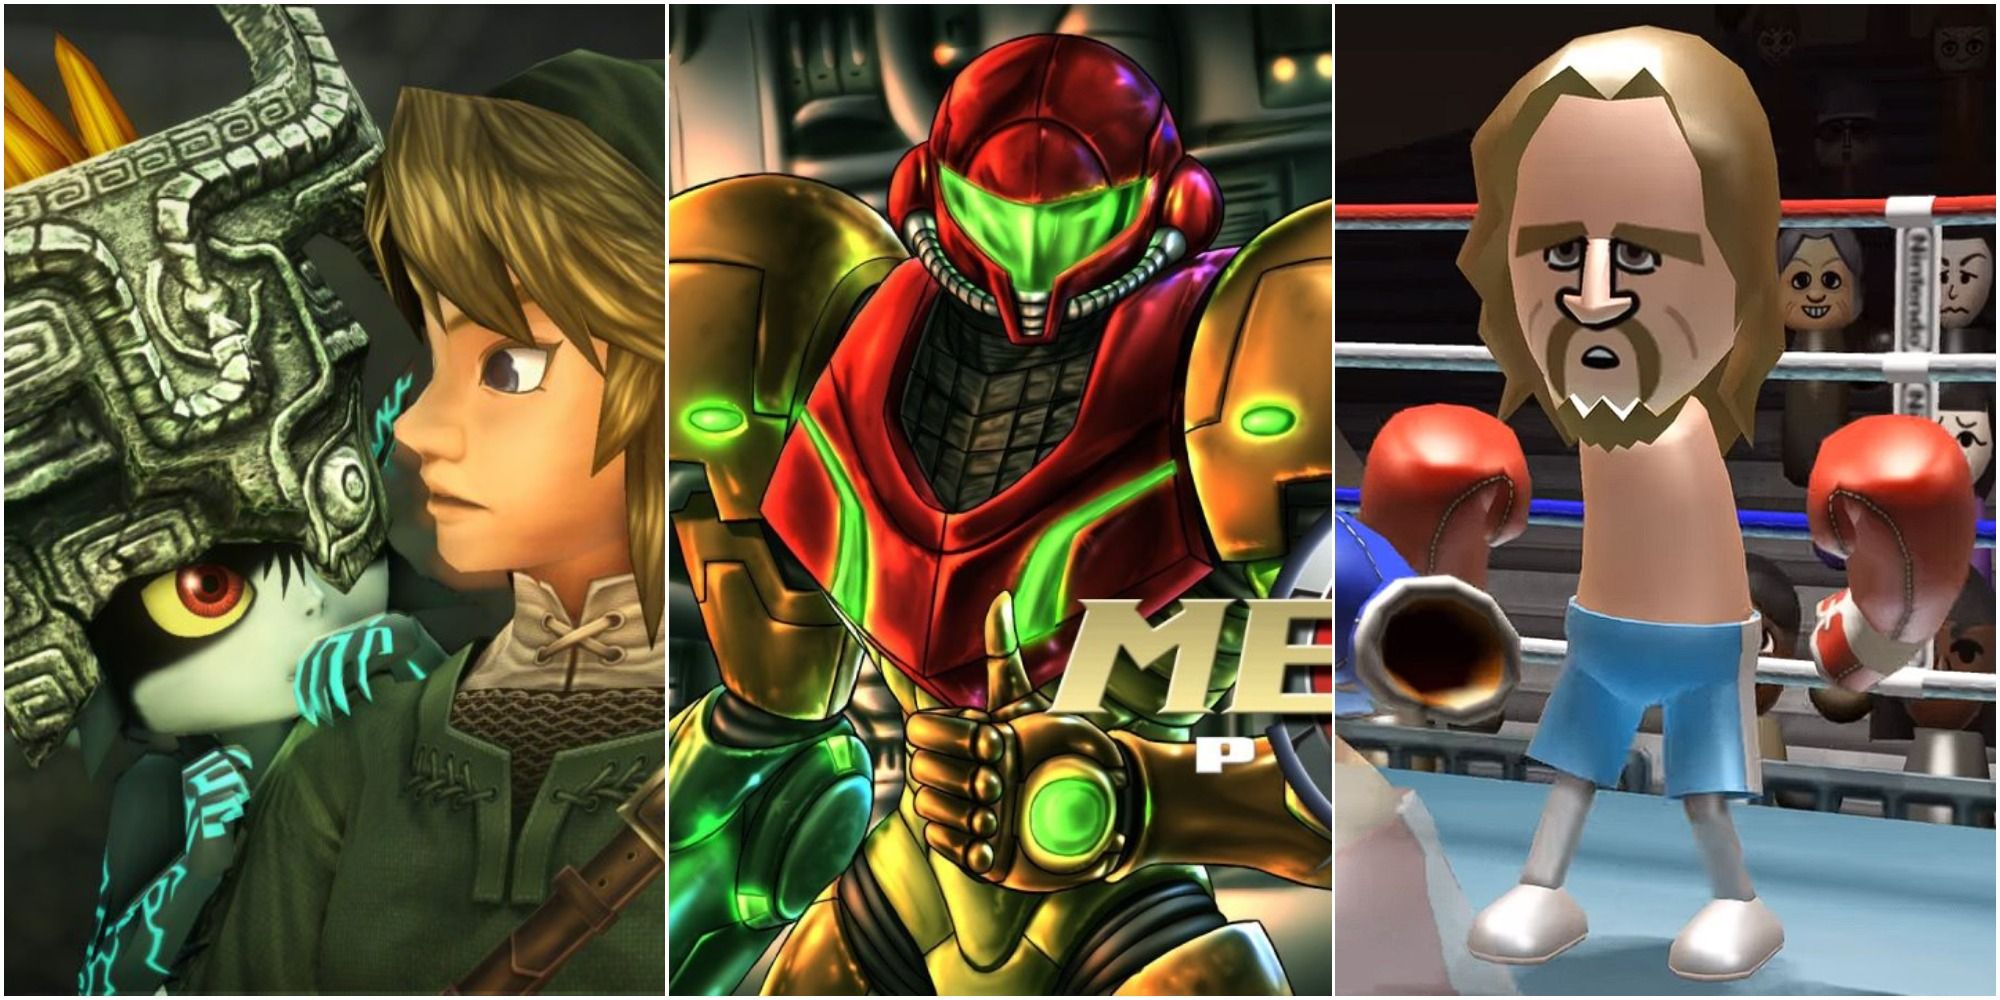 Wii Games Featured - Link & Midna, Samus, Mii